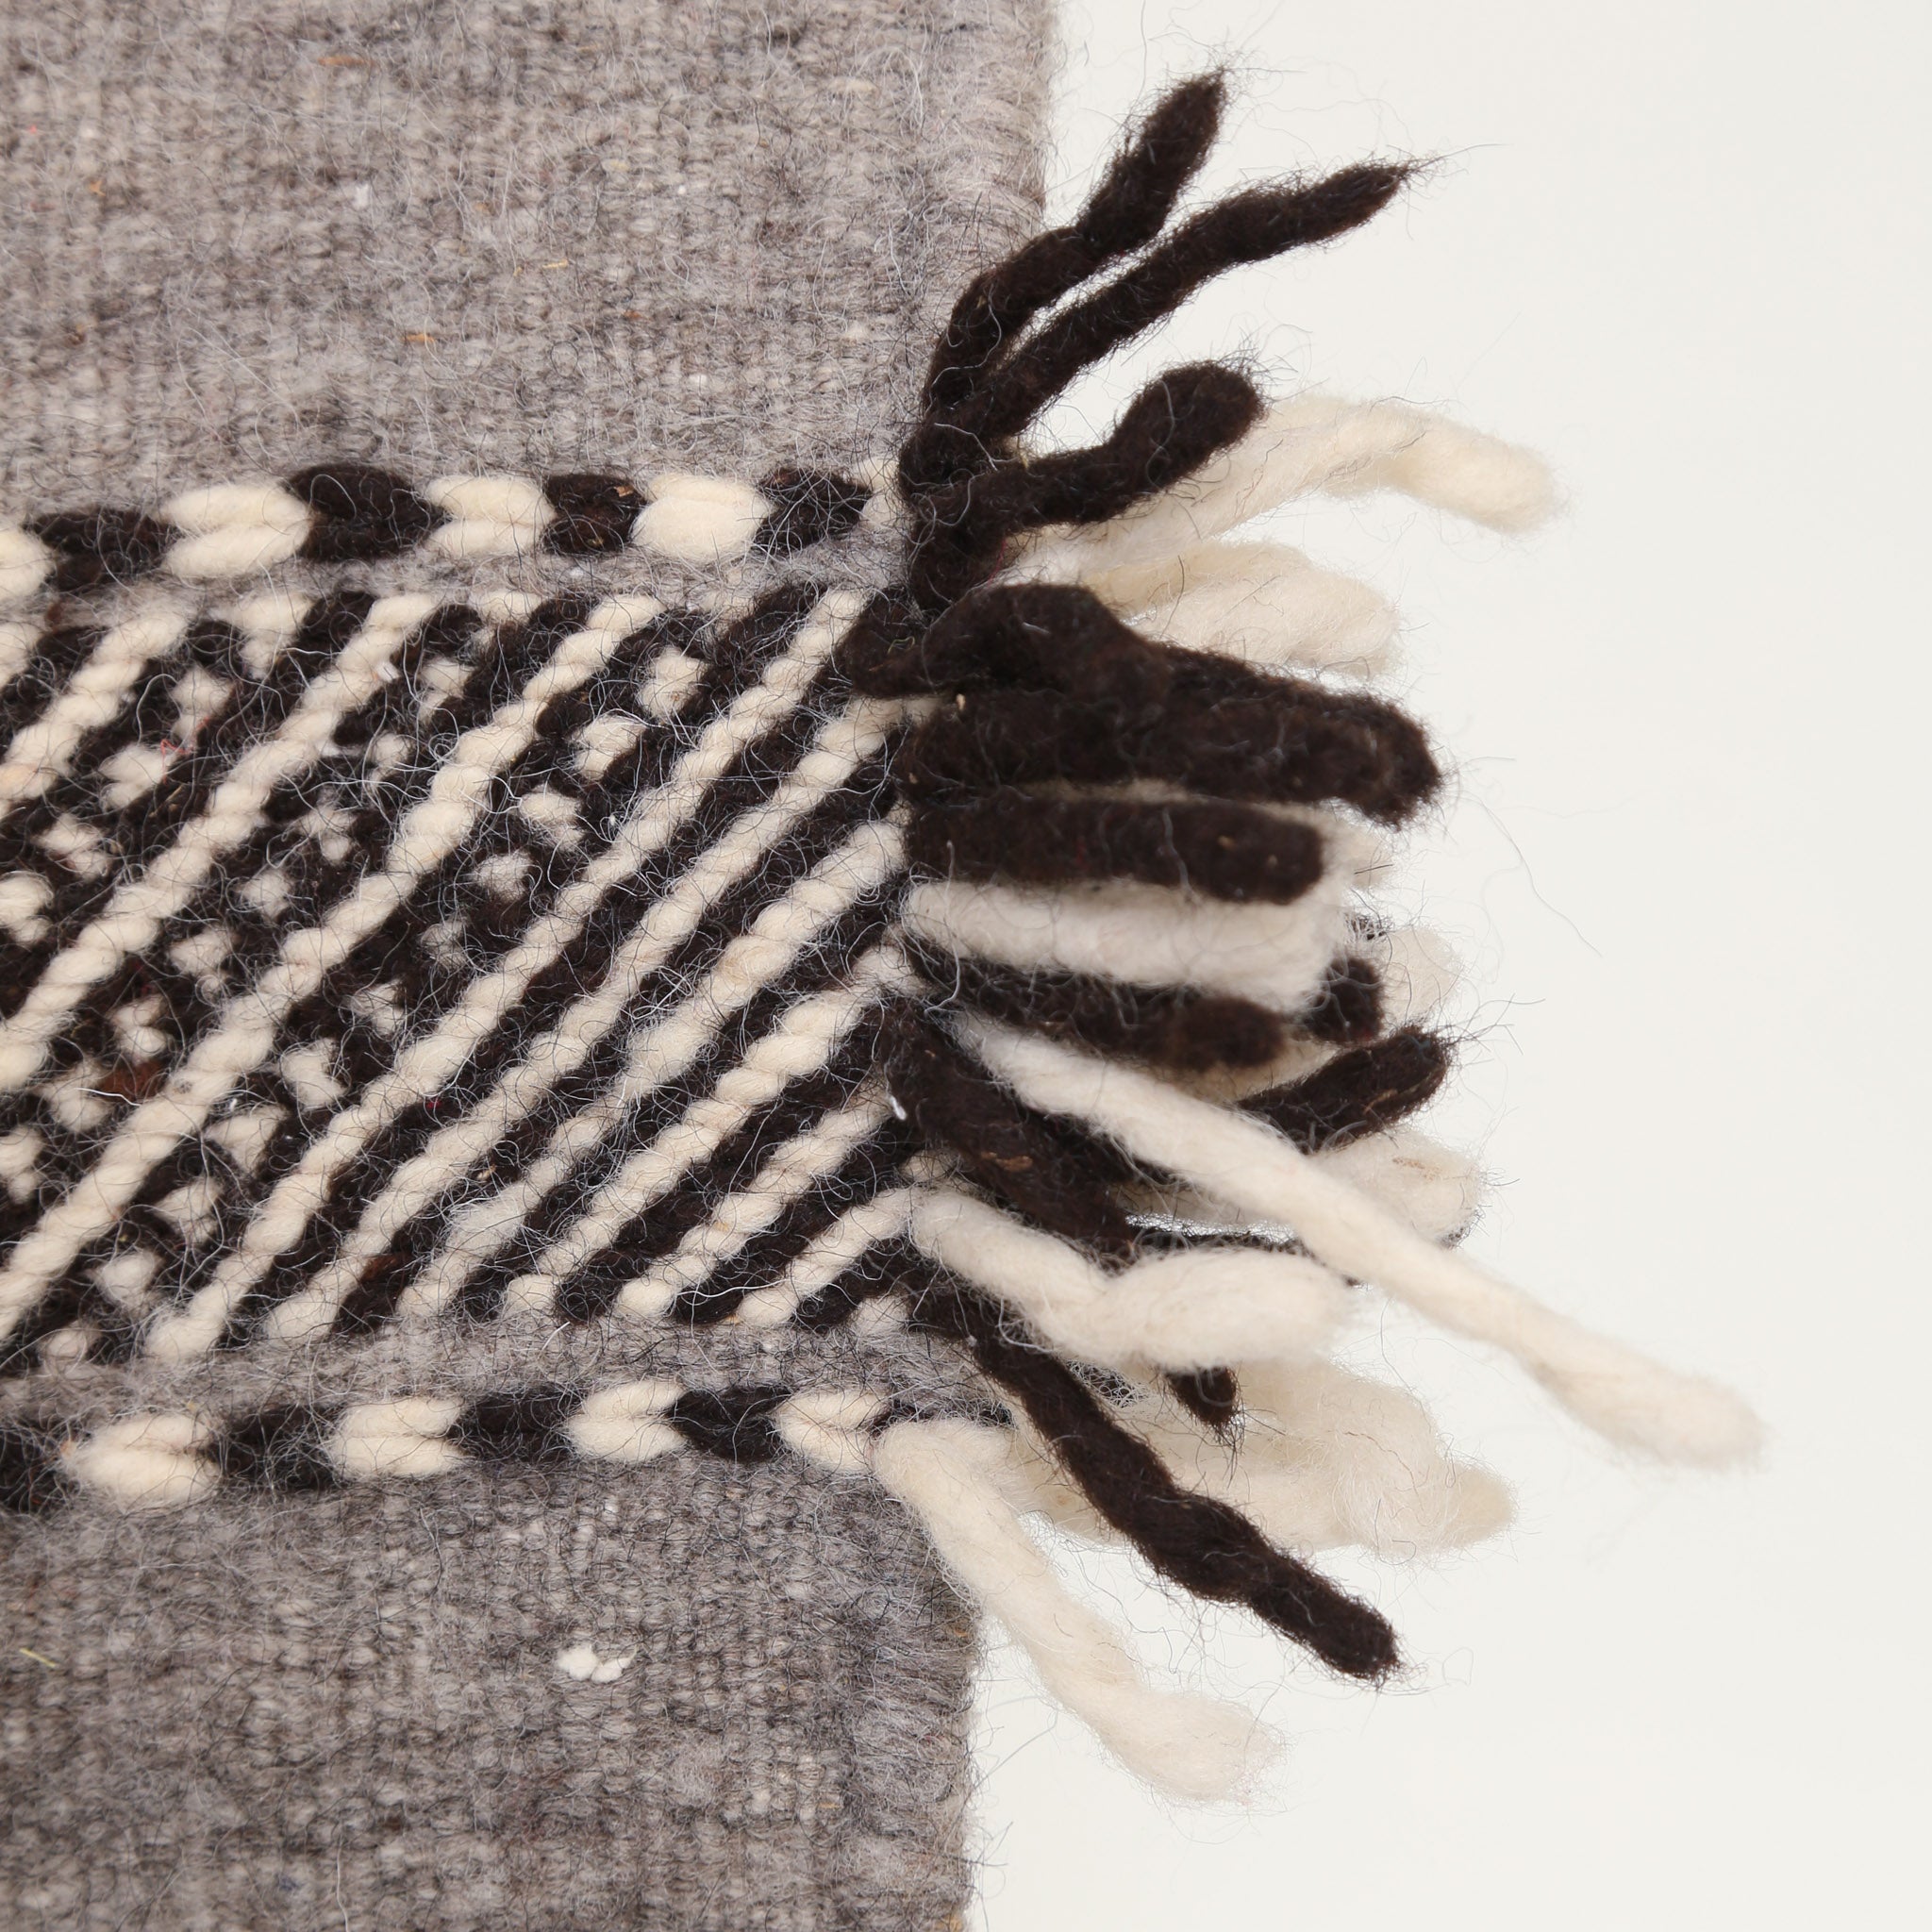 dettaglio del lato di un tappeto artigianale con dei fili di lana nera e  bianca che escono